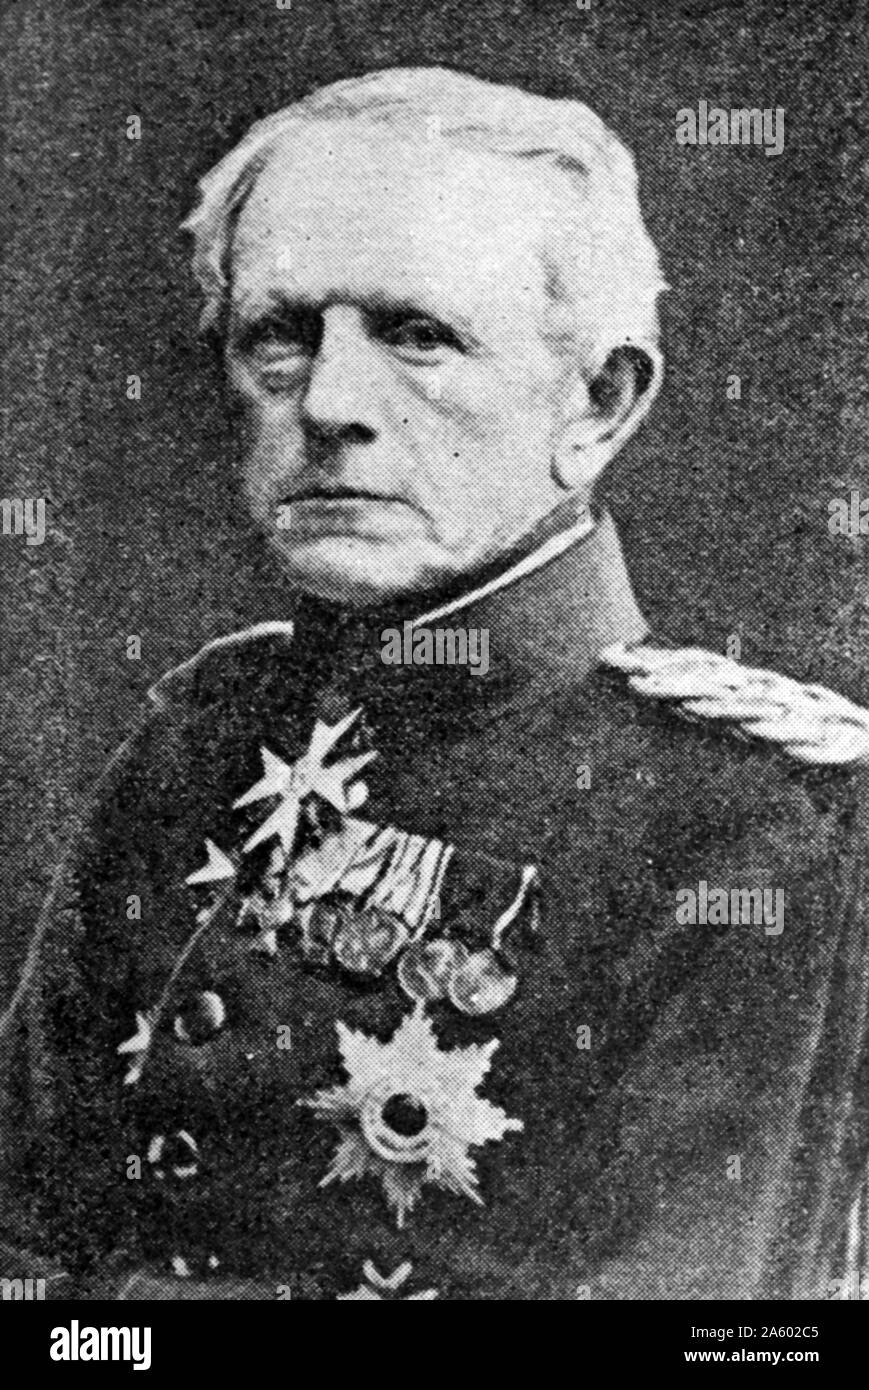 Portrait photographique de Helmuth von Moltke l'ancien (1800-1891) un maréchal allemand. En date du 19e siècle Banque D'Images